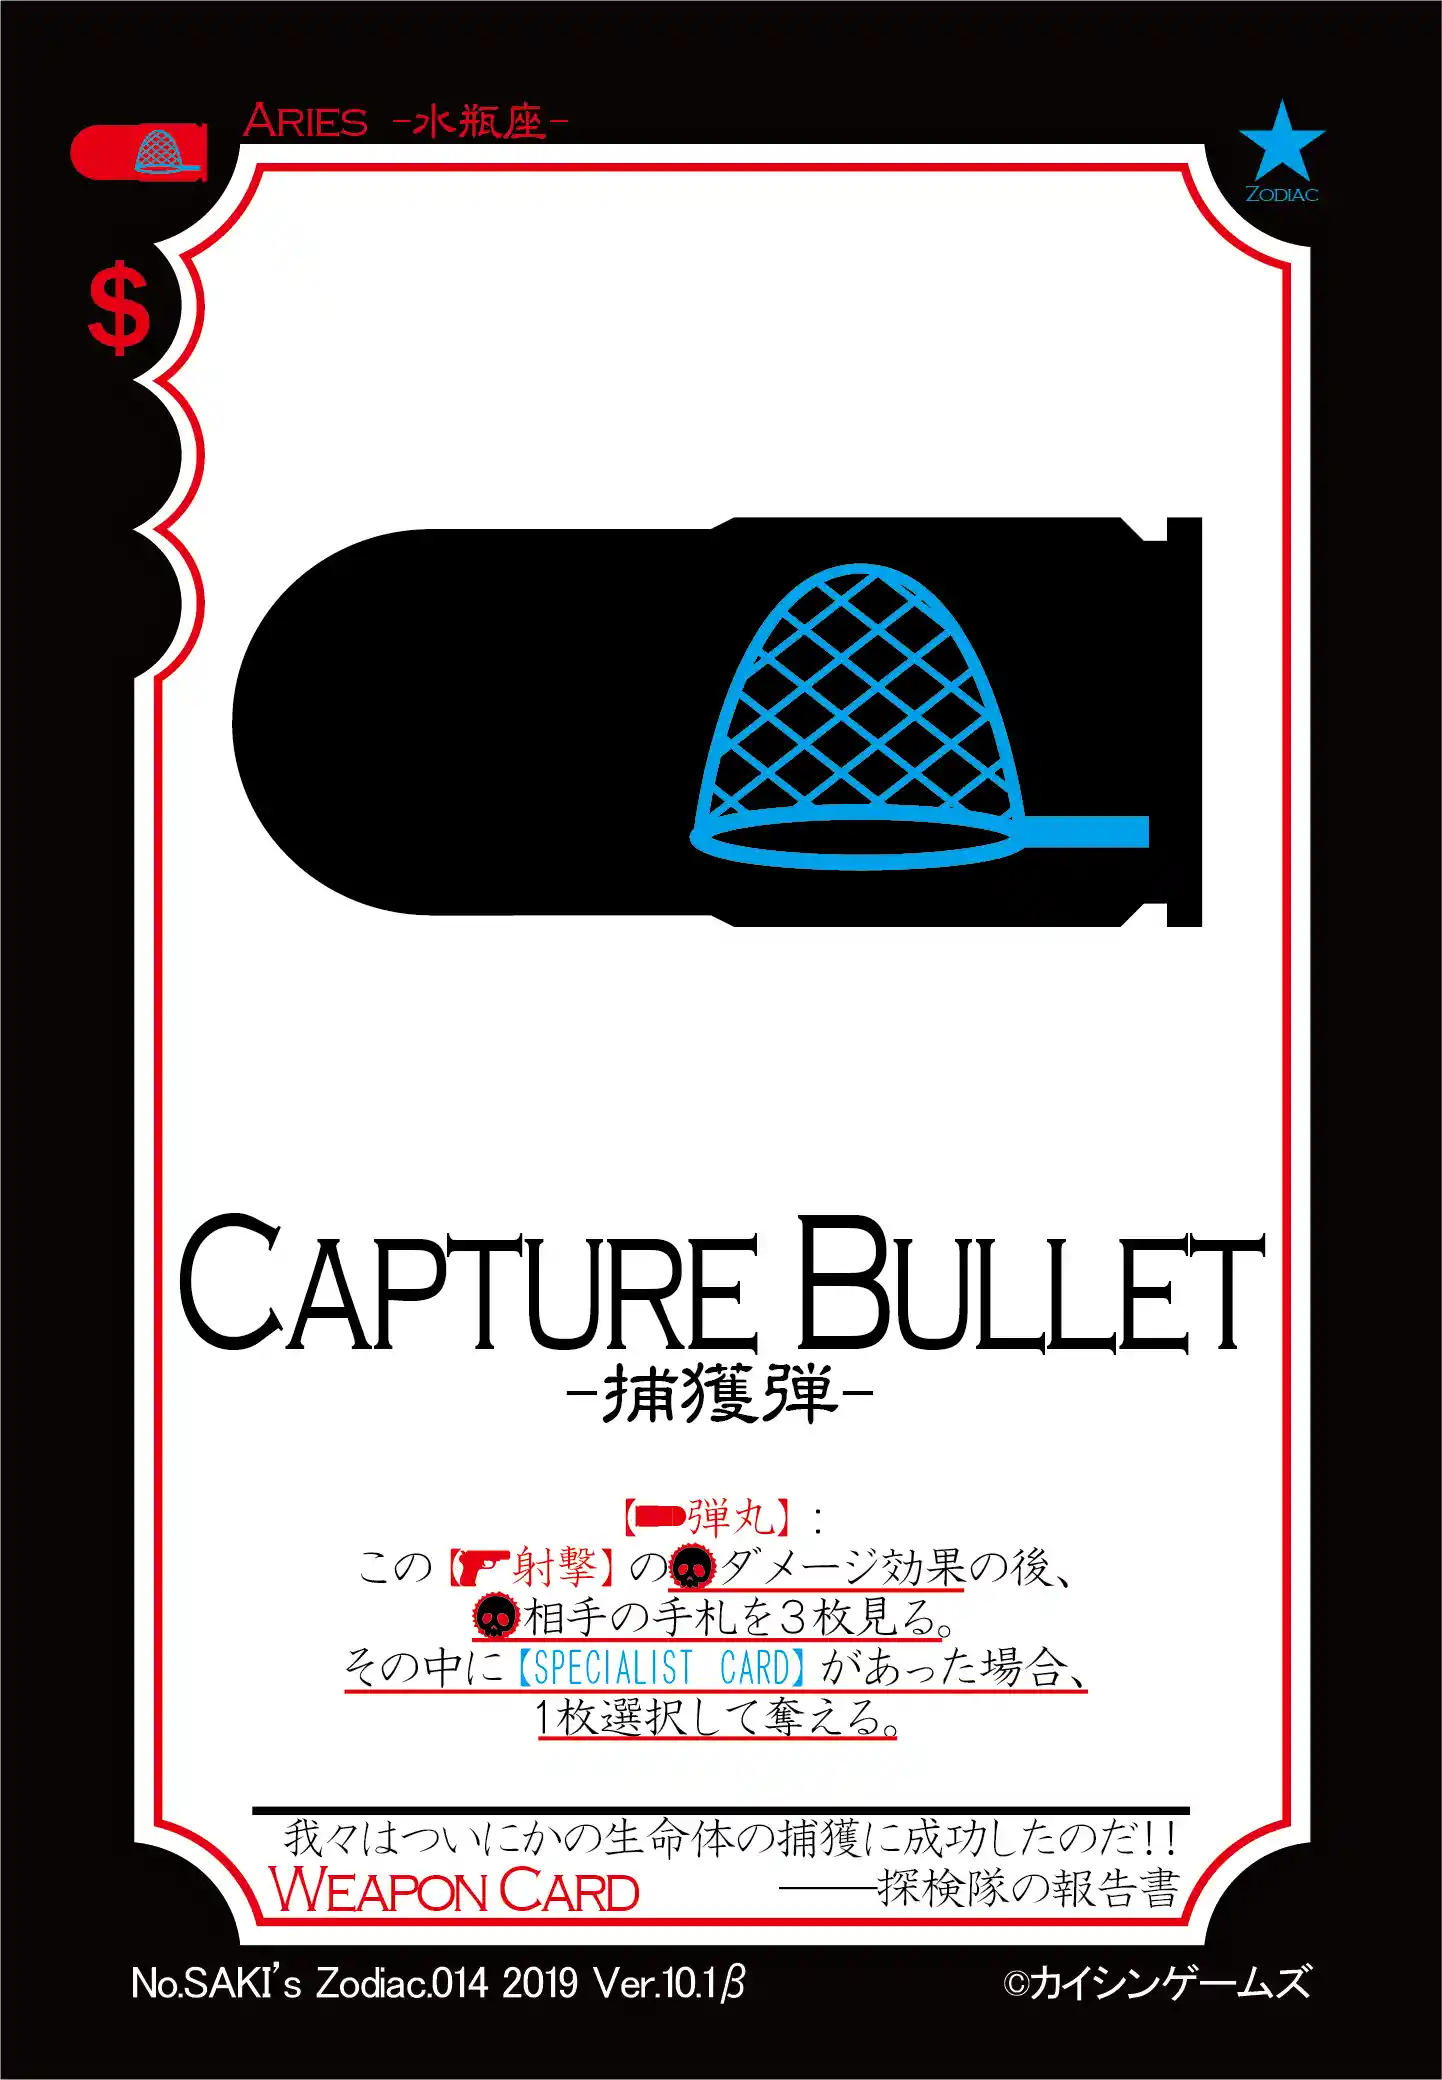 CAPTURE BULLET